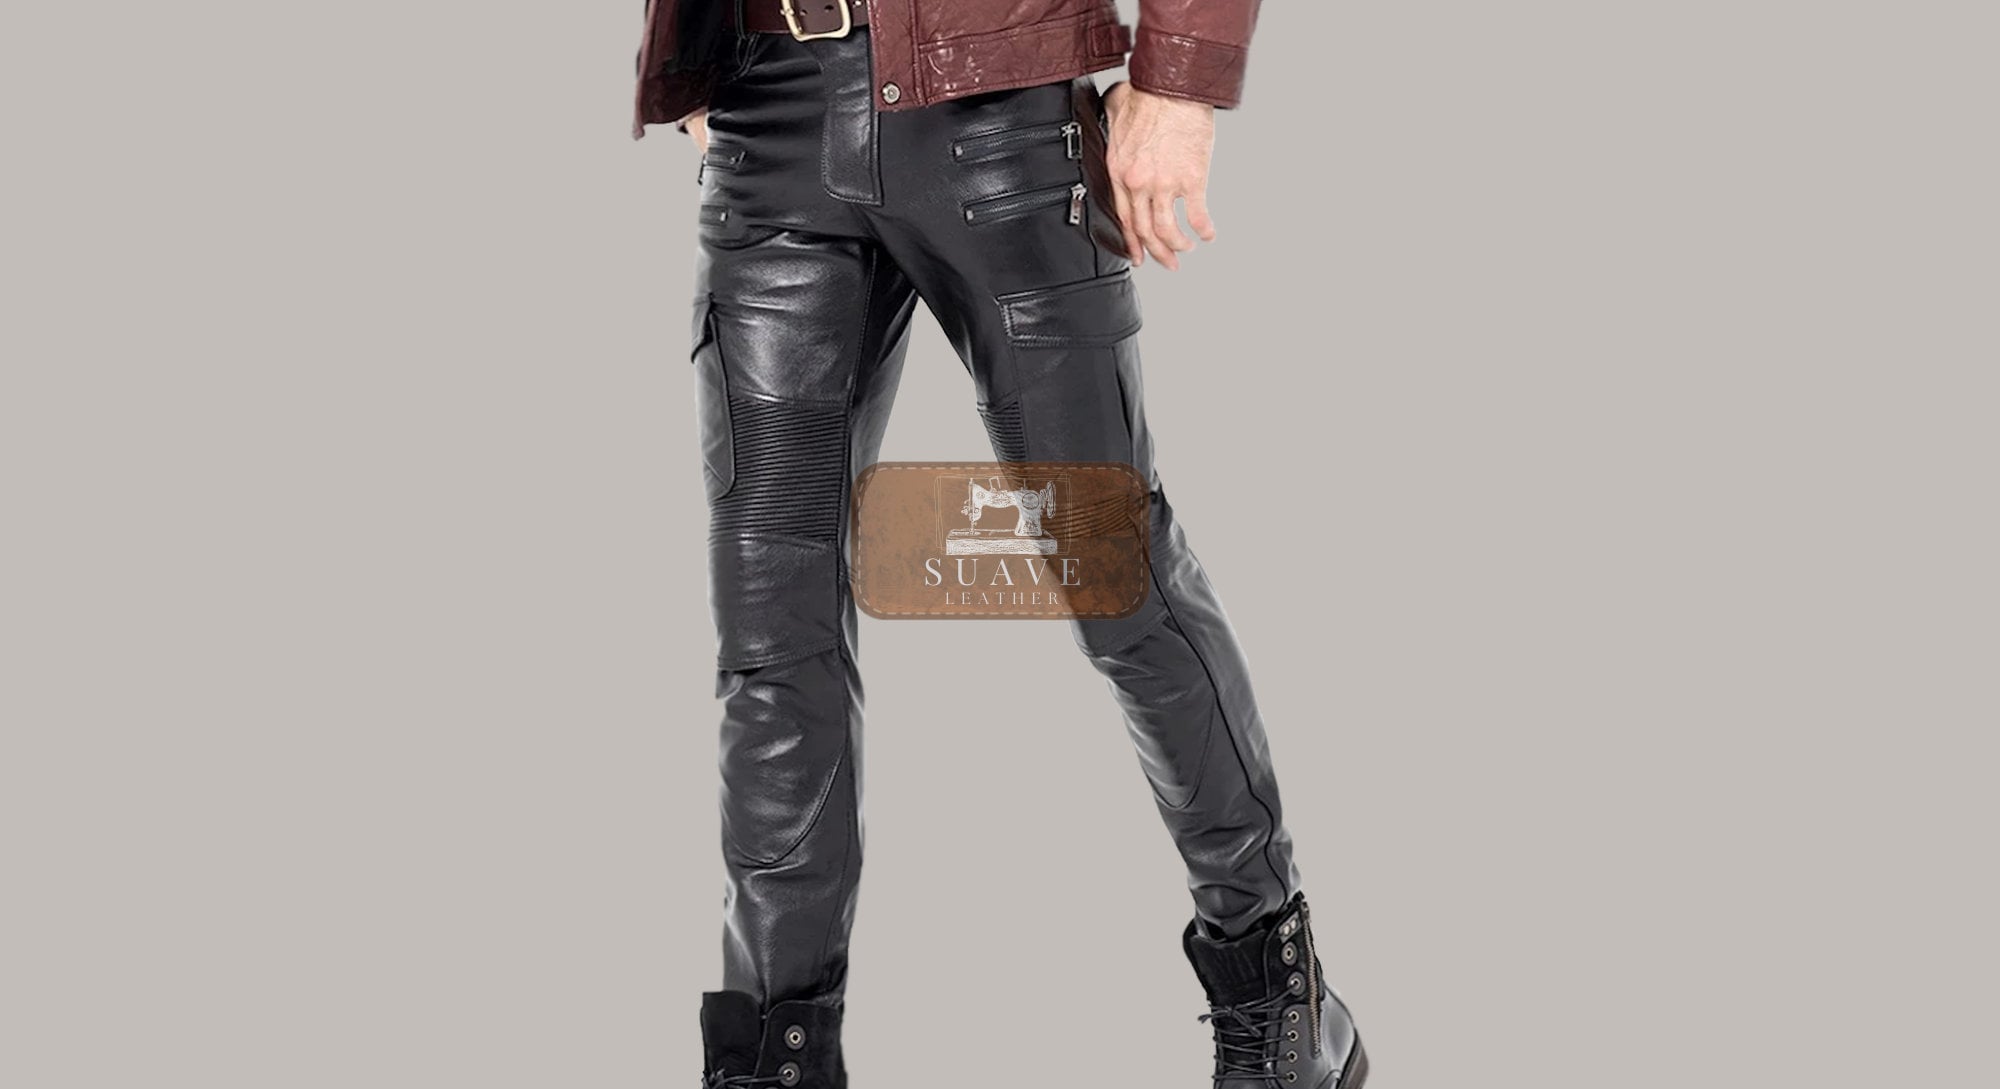 Men's Punk Patent Leather Chain Pants – Punk Design